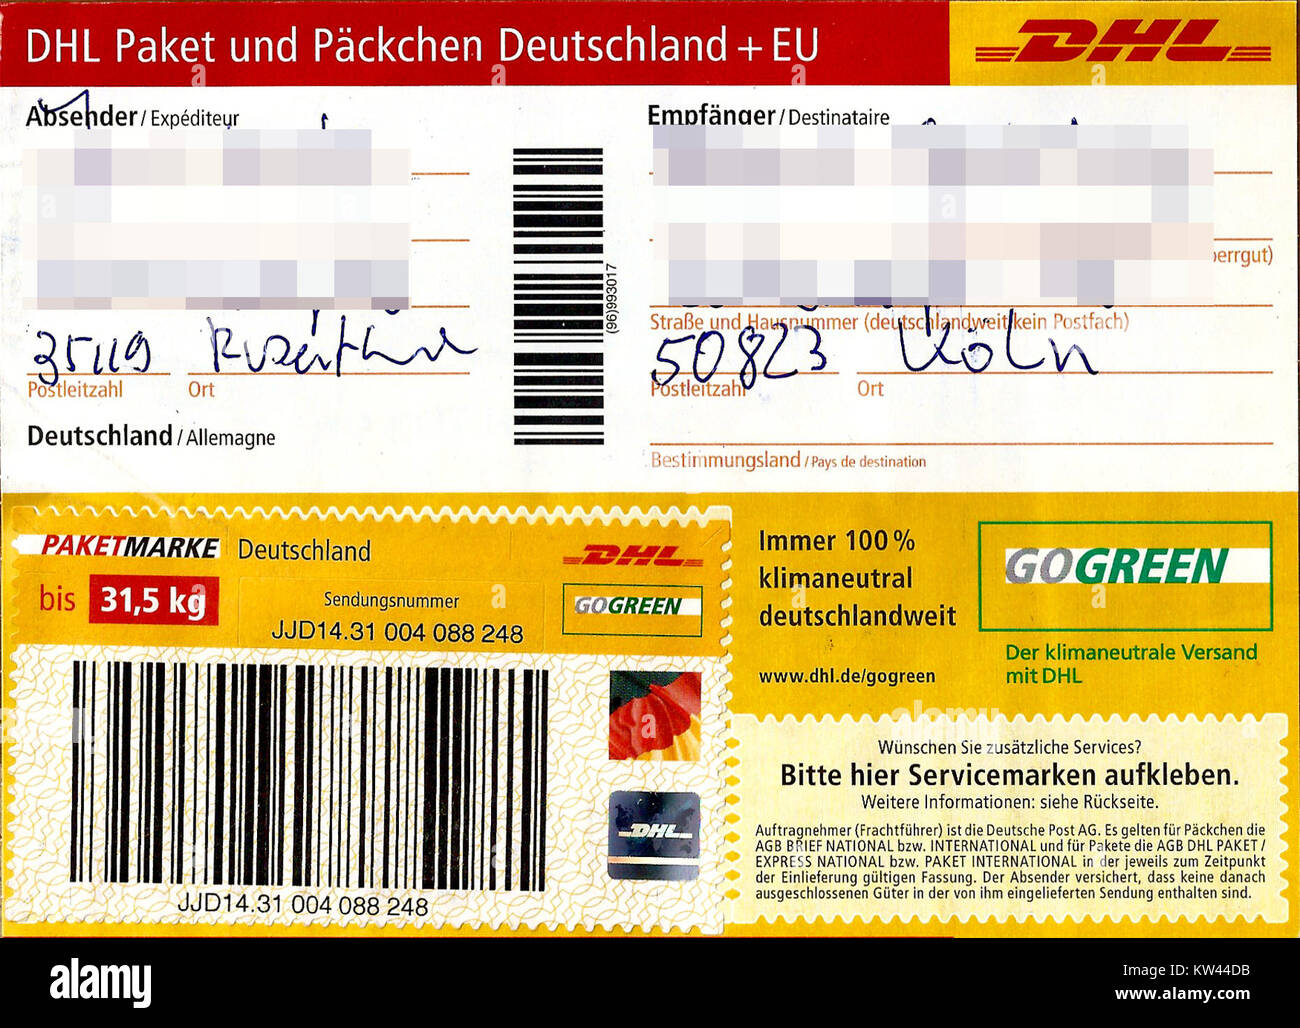 Paketaufkleber DHL Paket mit Paketmarke bis 31,5 kg 2016 Stockfoto, Bild: 170351031 - Alamy